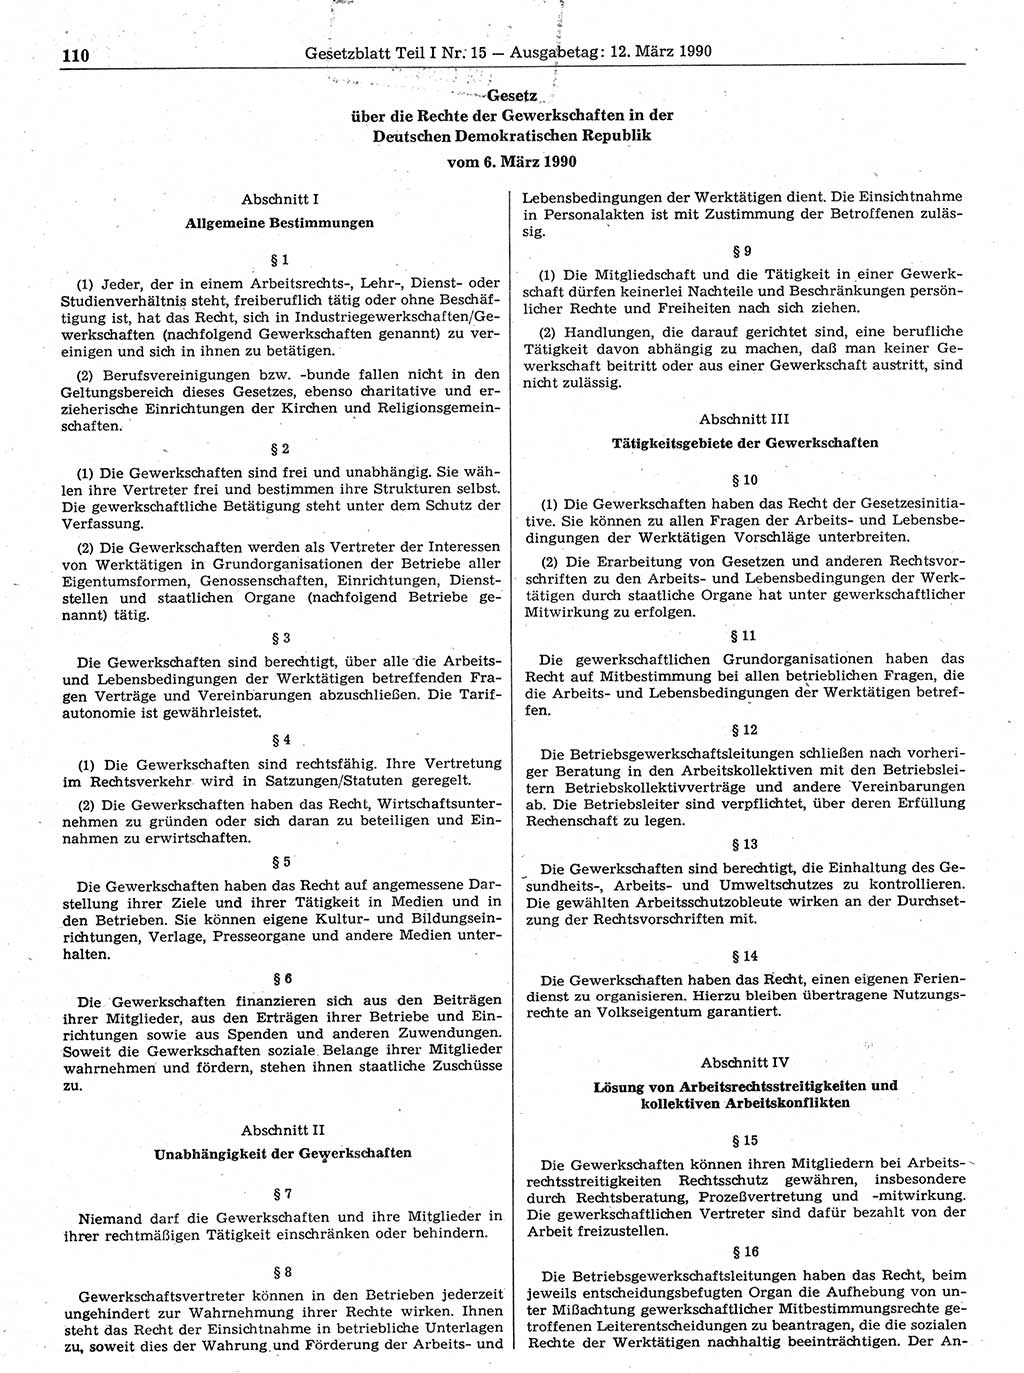 Gesetzblatt (GBl.) der Deutschen Demokratischen Republik (DDR) Teil Ⅰ 1990, Seite 110 (GBl. DDR Ⅰ 1990, S. 110)